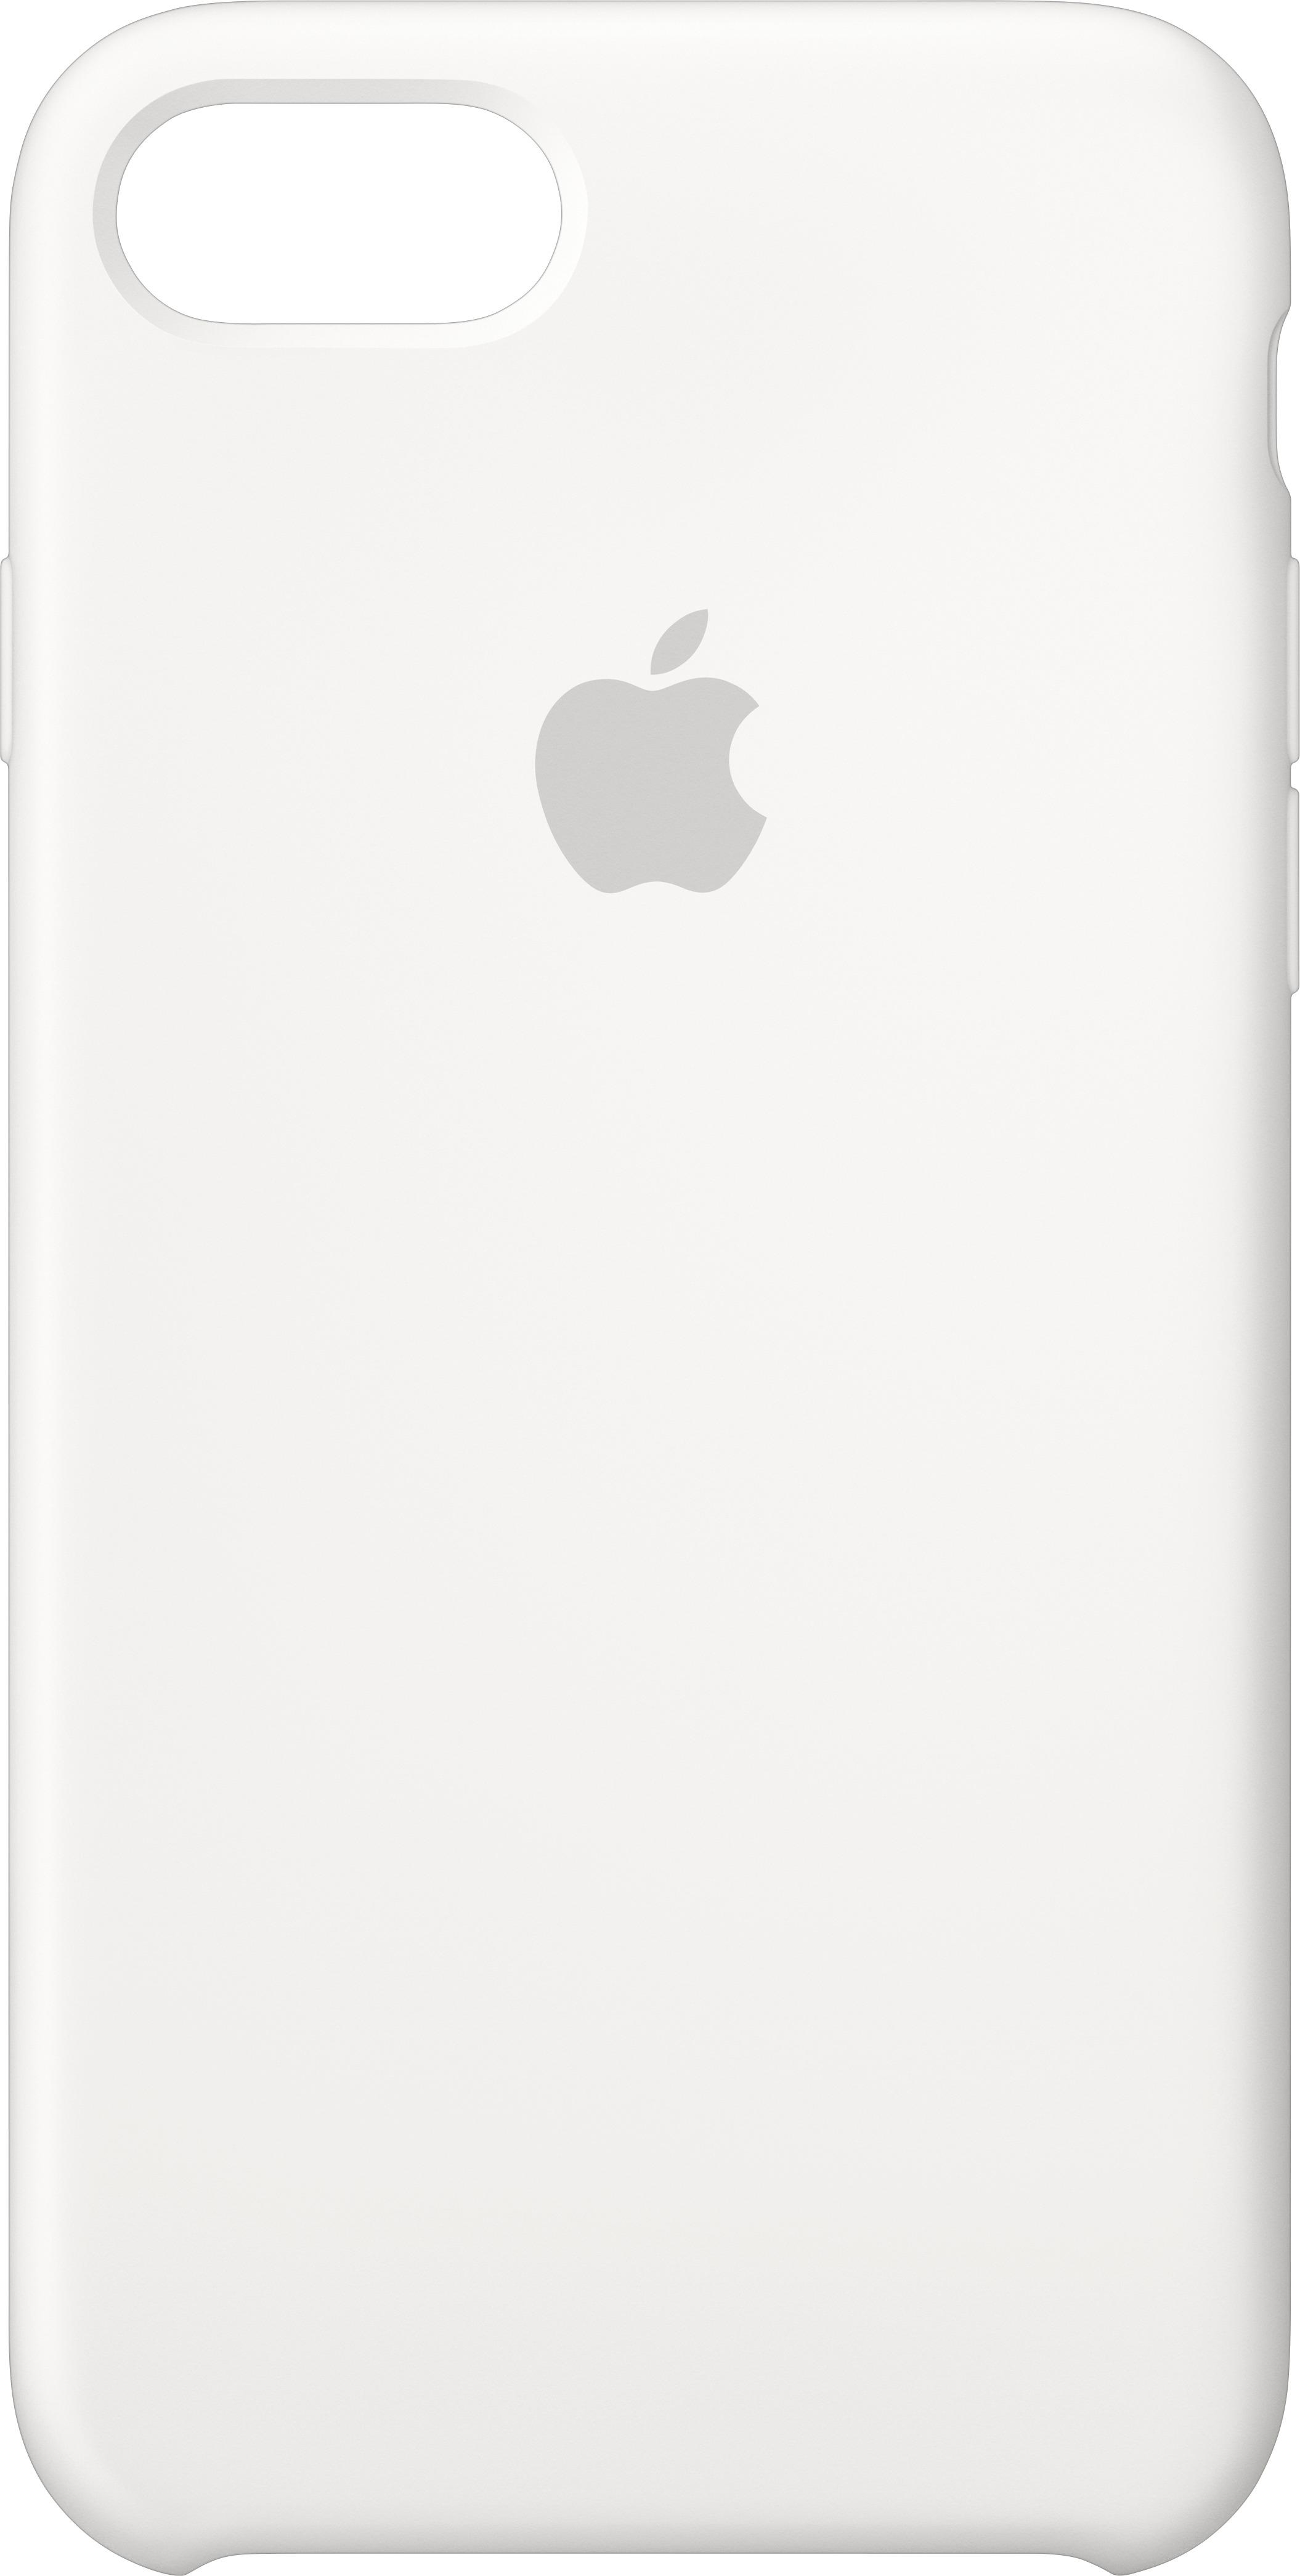 スマートフォン/携帯電話 スマートフォン本体 Best Buy: Apple iPhone® 8/7 Silicone Case White MQGL2ZM/A